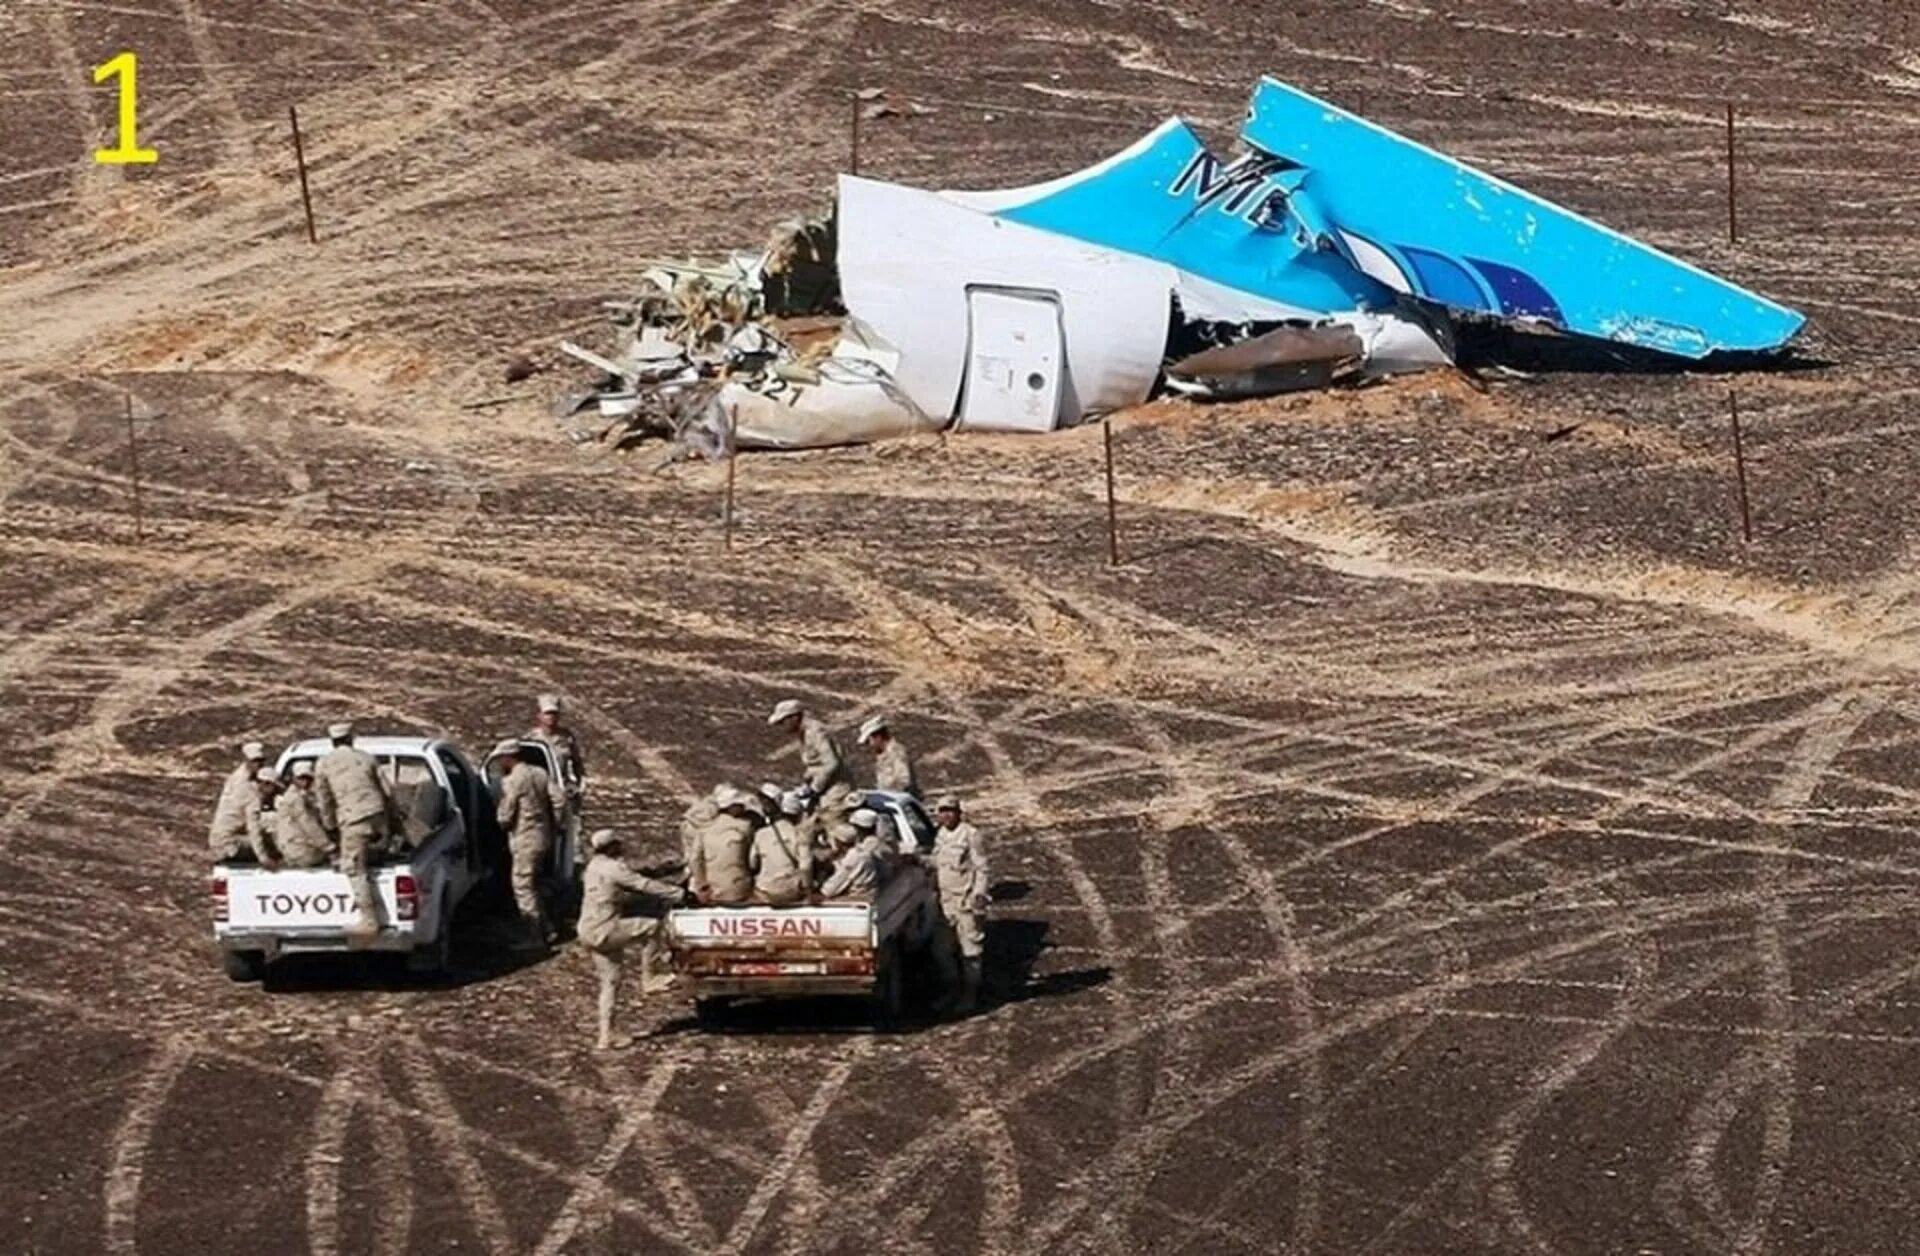 Октябрь 2015 года авиакатастрофа. Катастрофа a321 над Синайским полуостровом. Самолет a321 "Когалымавиа". Над Синаем крушение а321 Египет. Катастрофа a321 над Синайским полуостровом (2015).